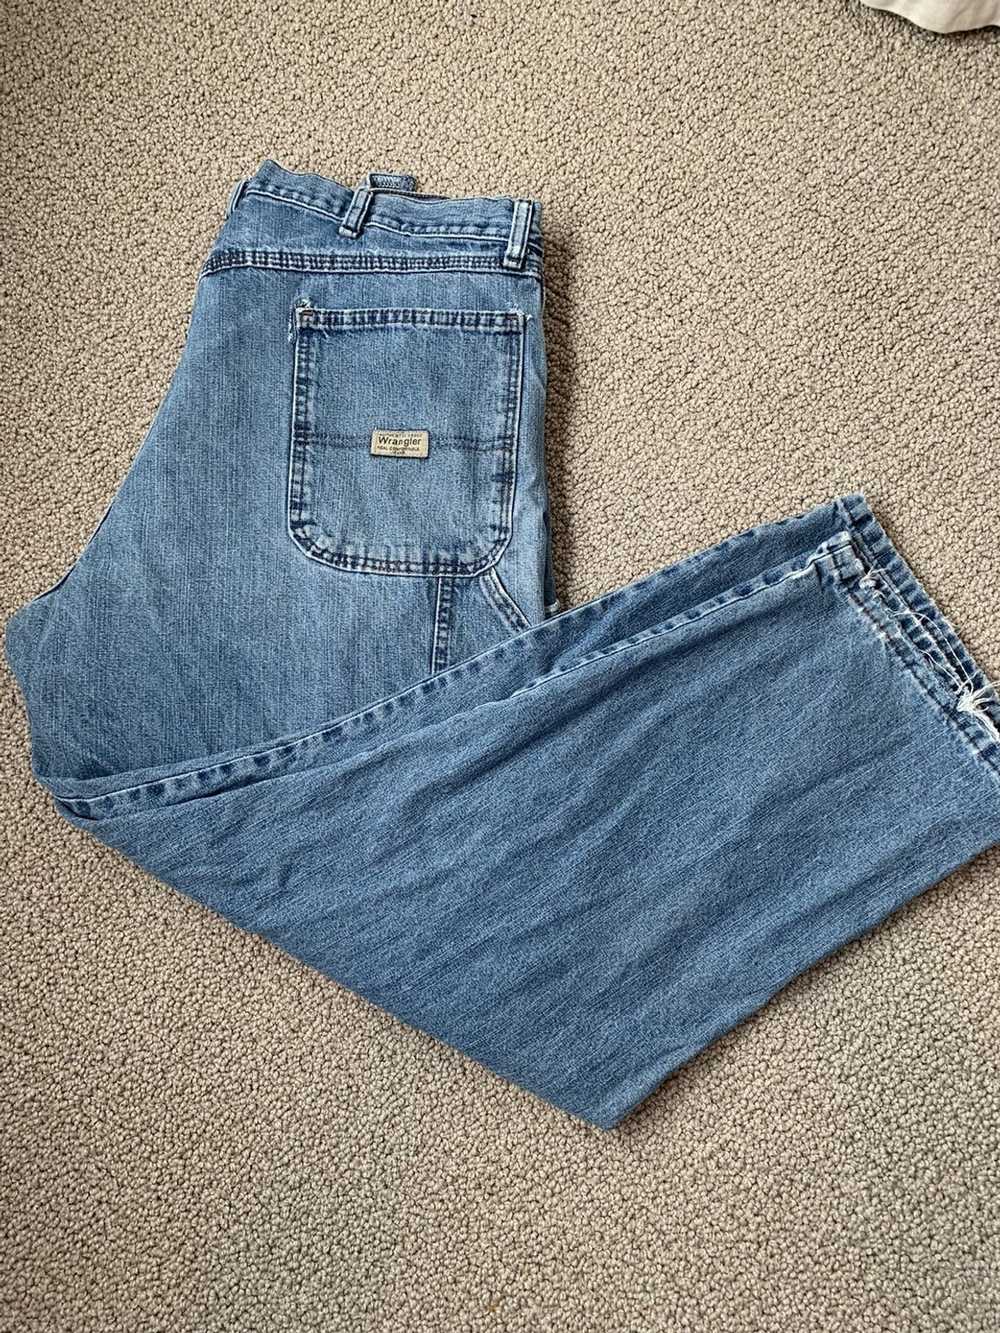 Vintage × Wrangler Vintage Wrangler Worn Jeans - image 1